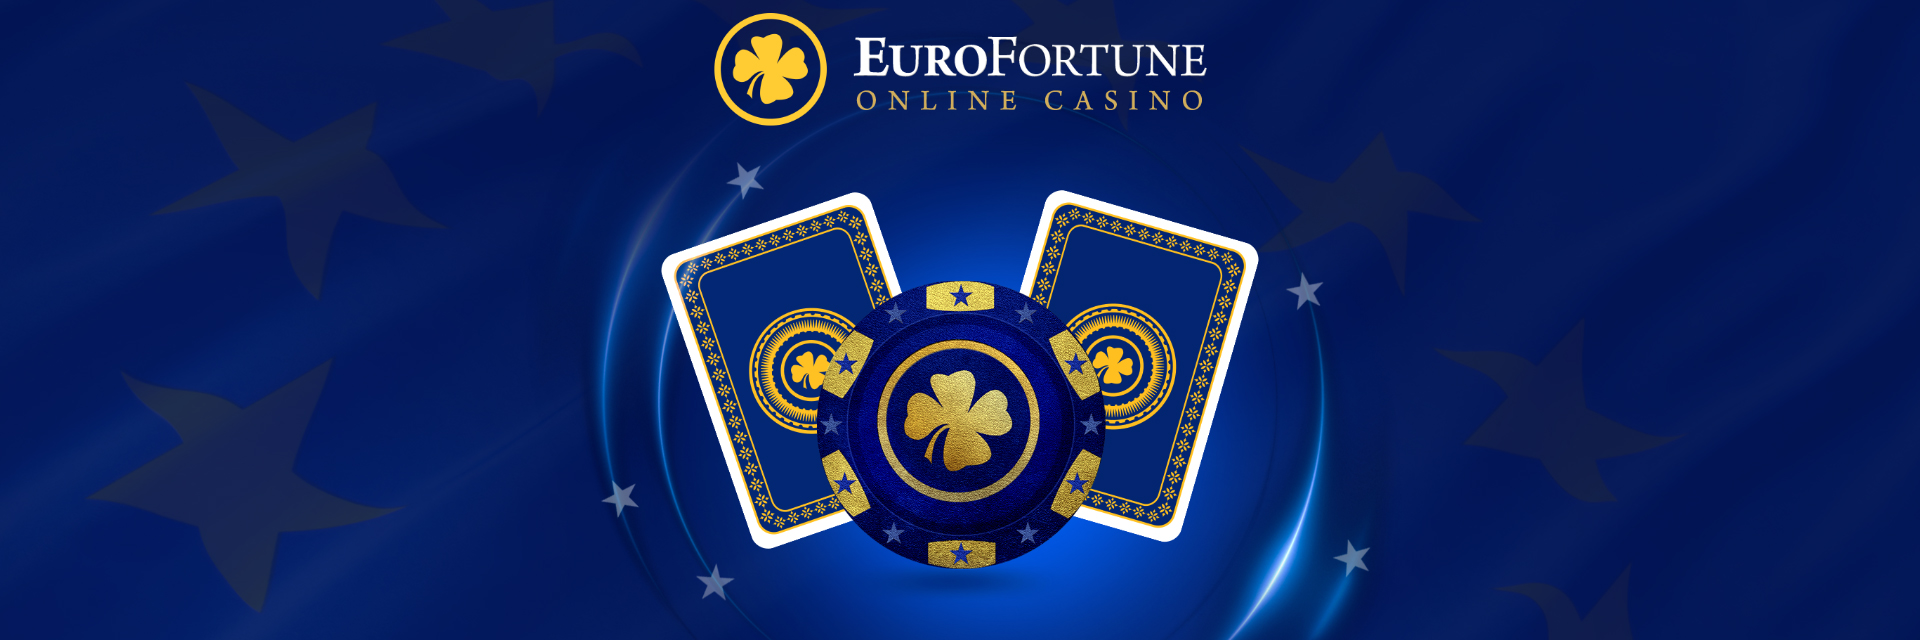 Euro fortune casino.